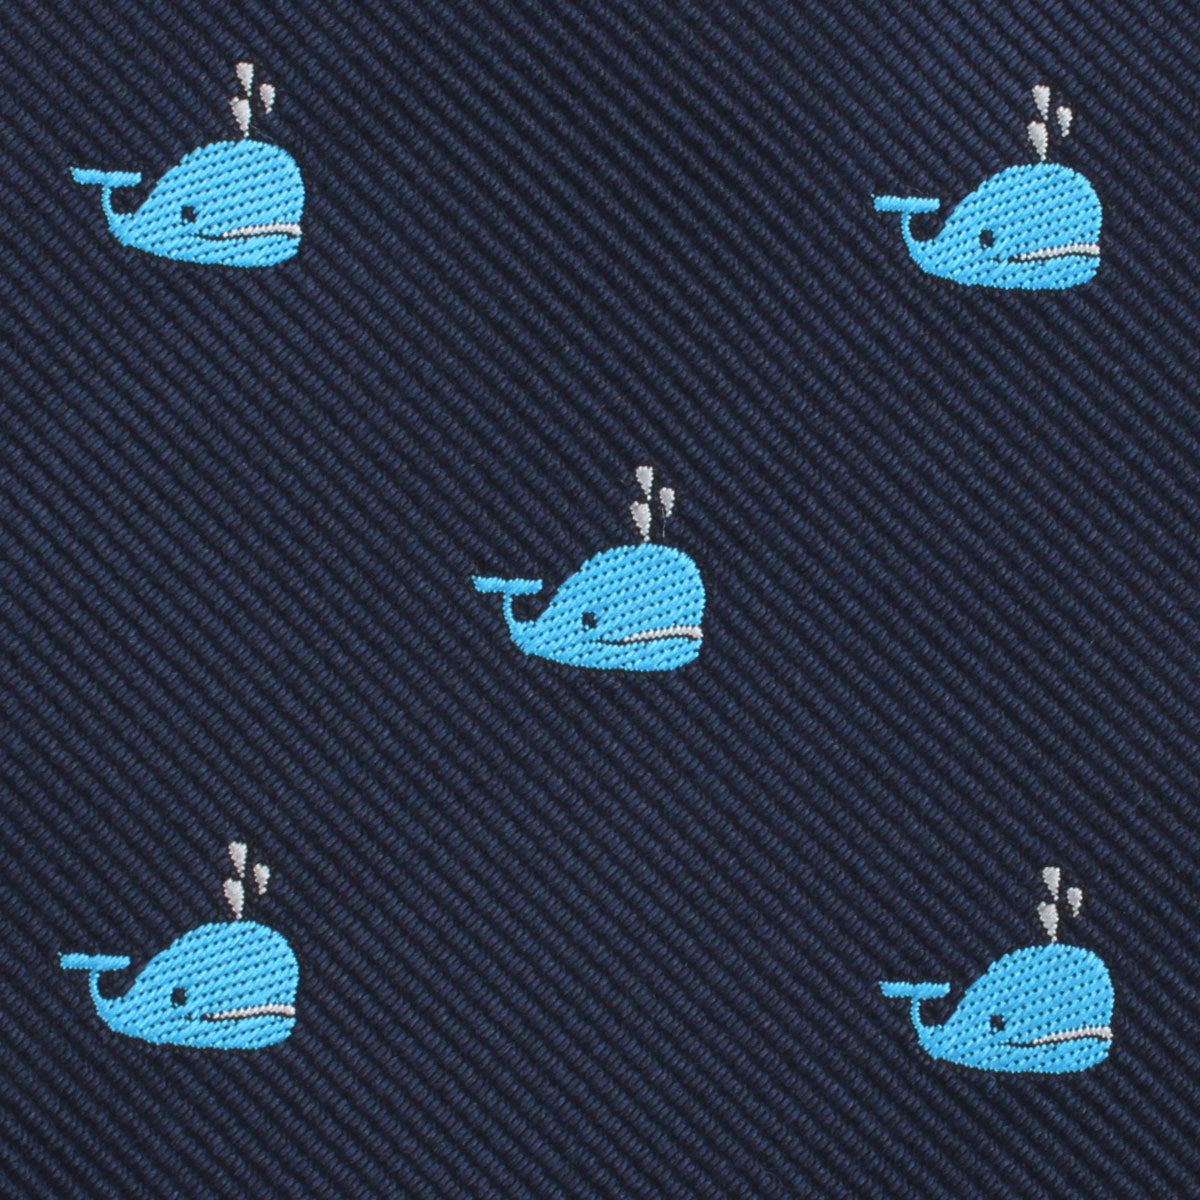 Laboon Blue Whale Necktie Fabric